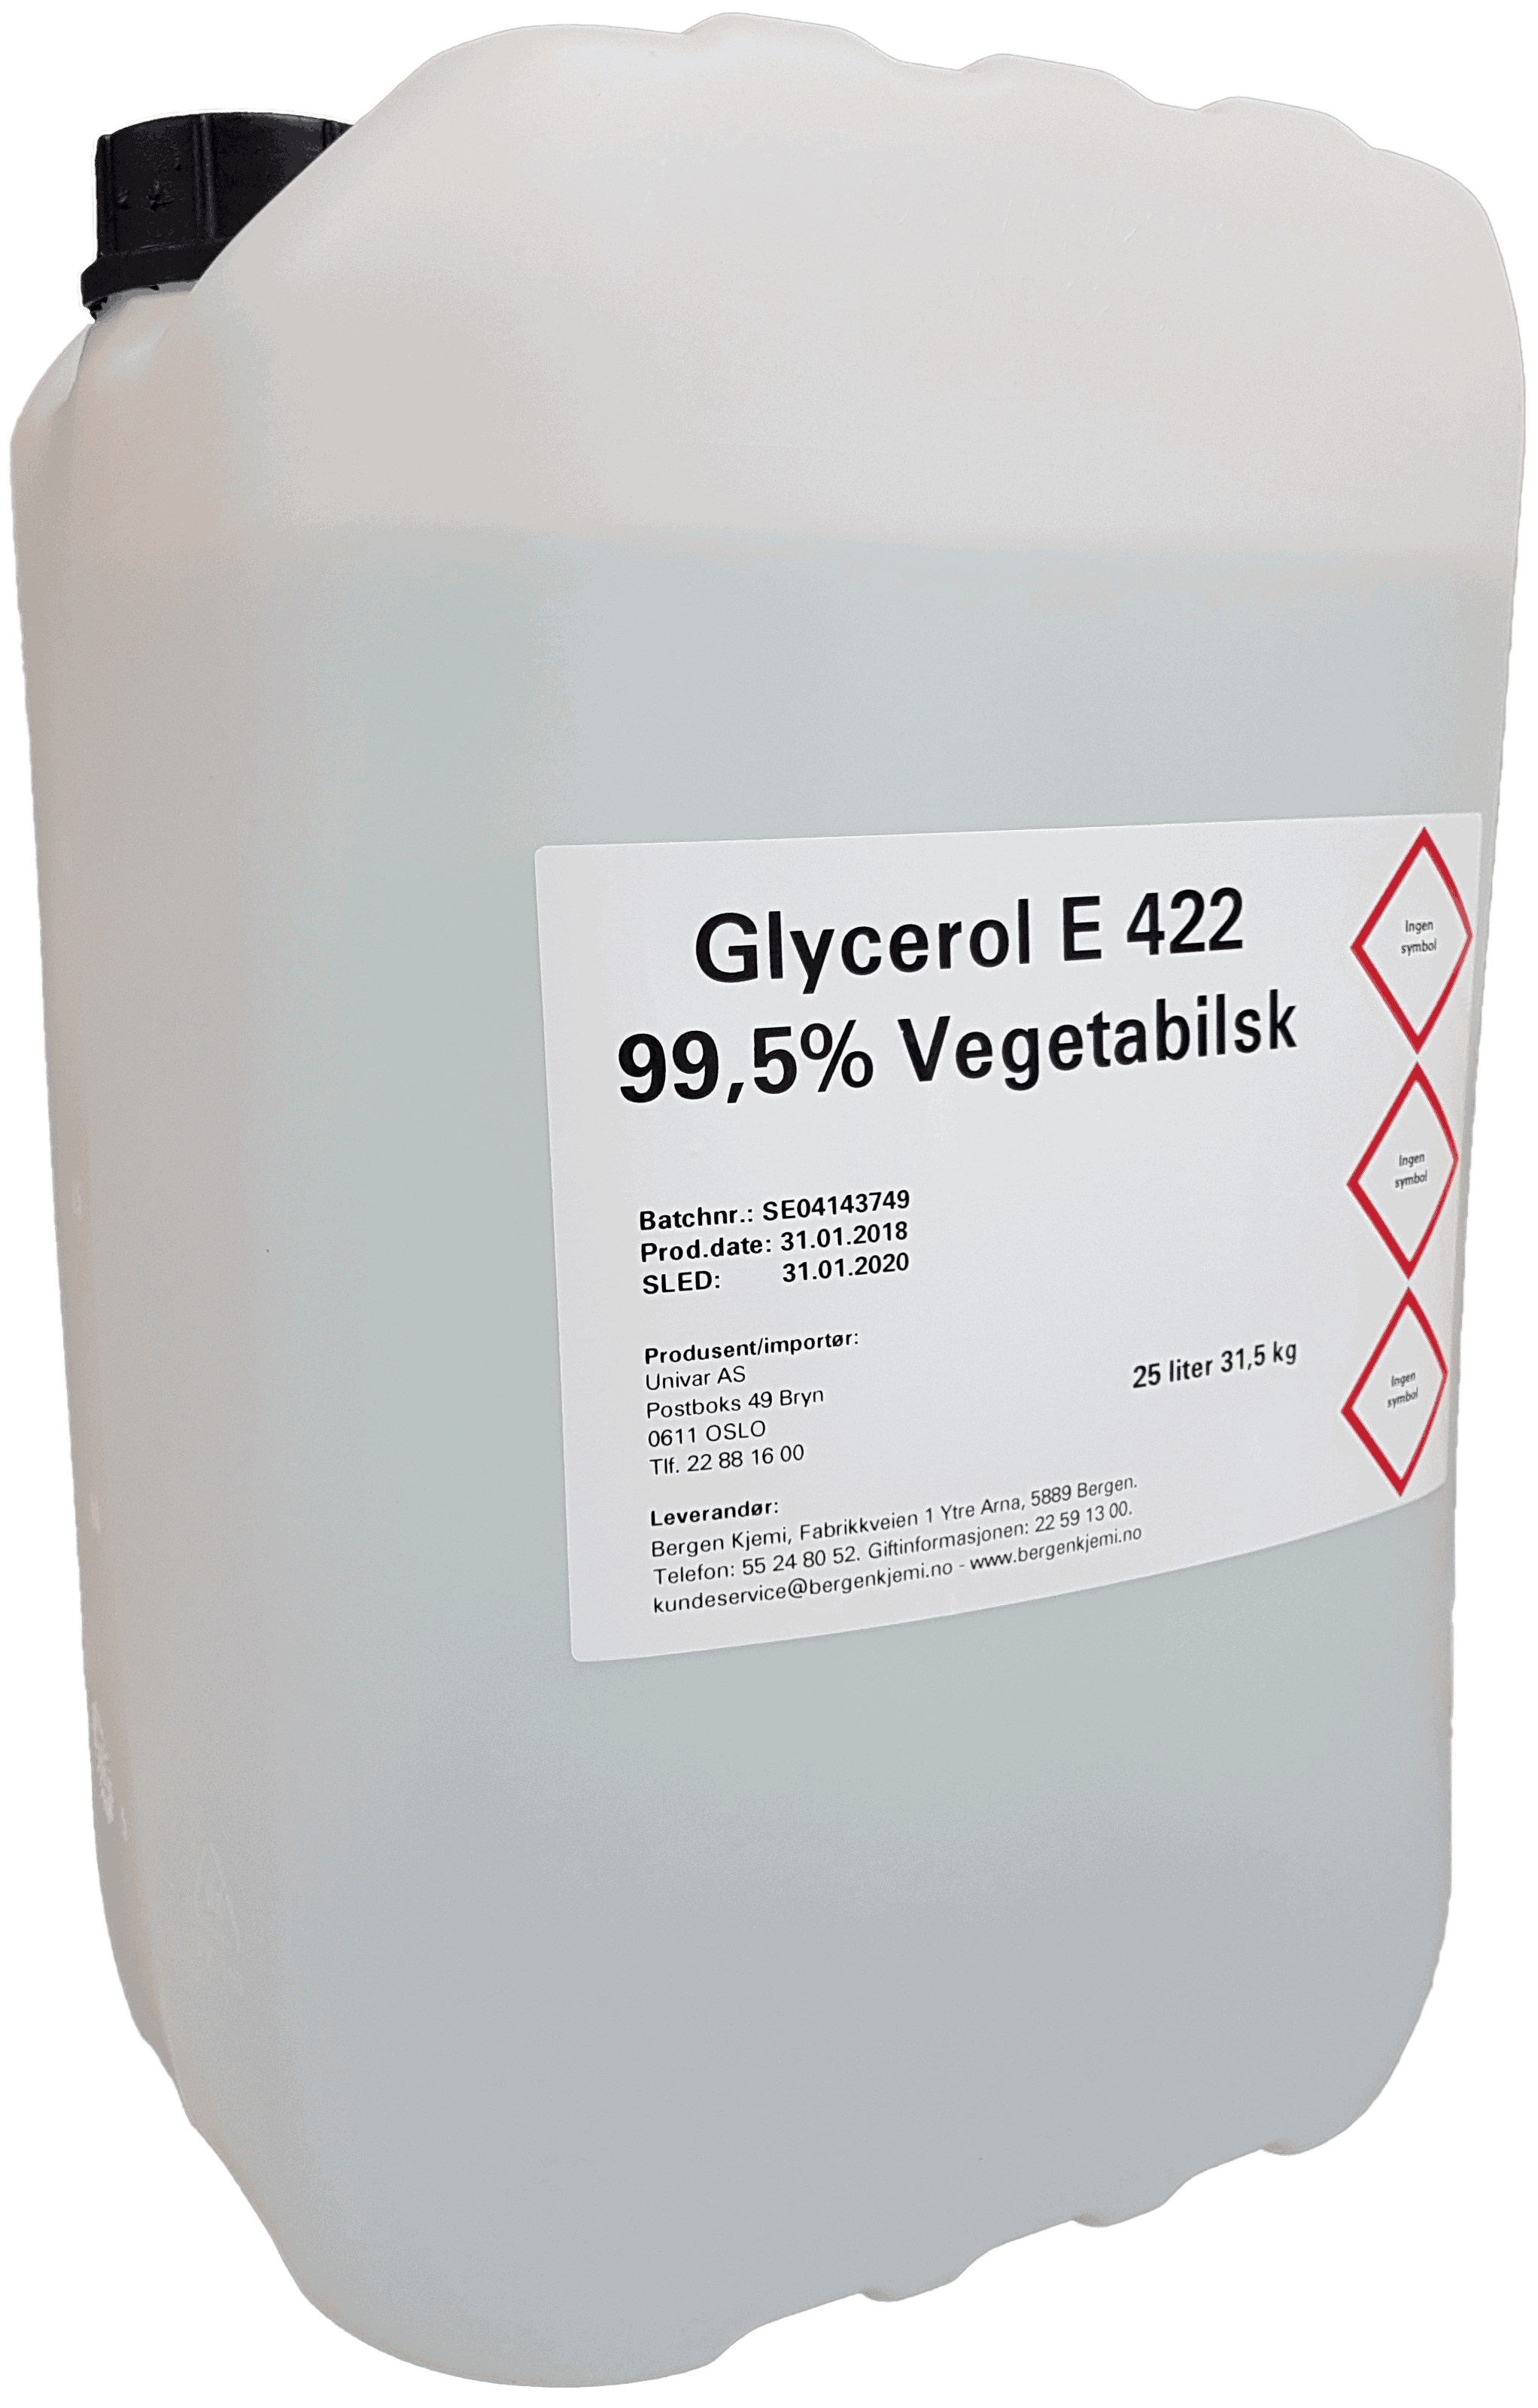 glycerol viscosity at 20 c